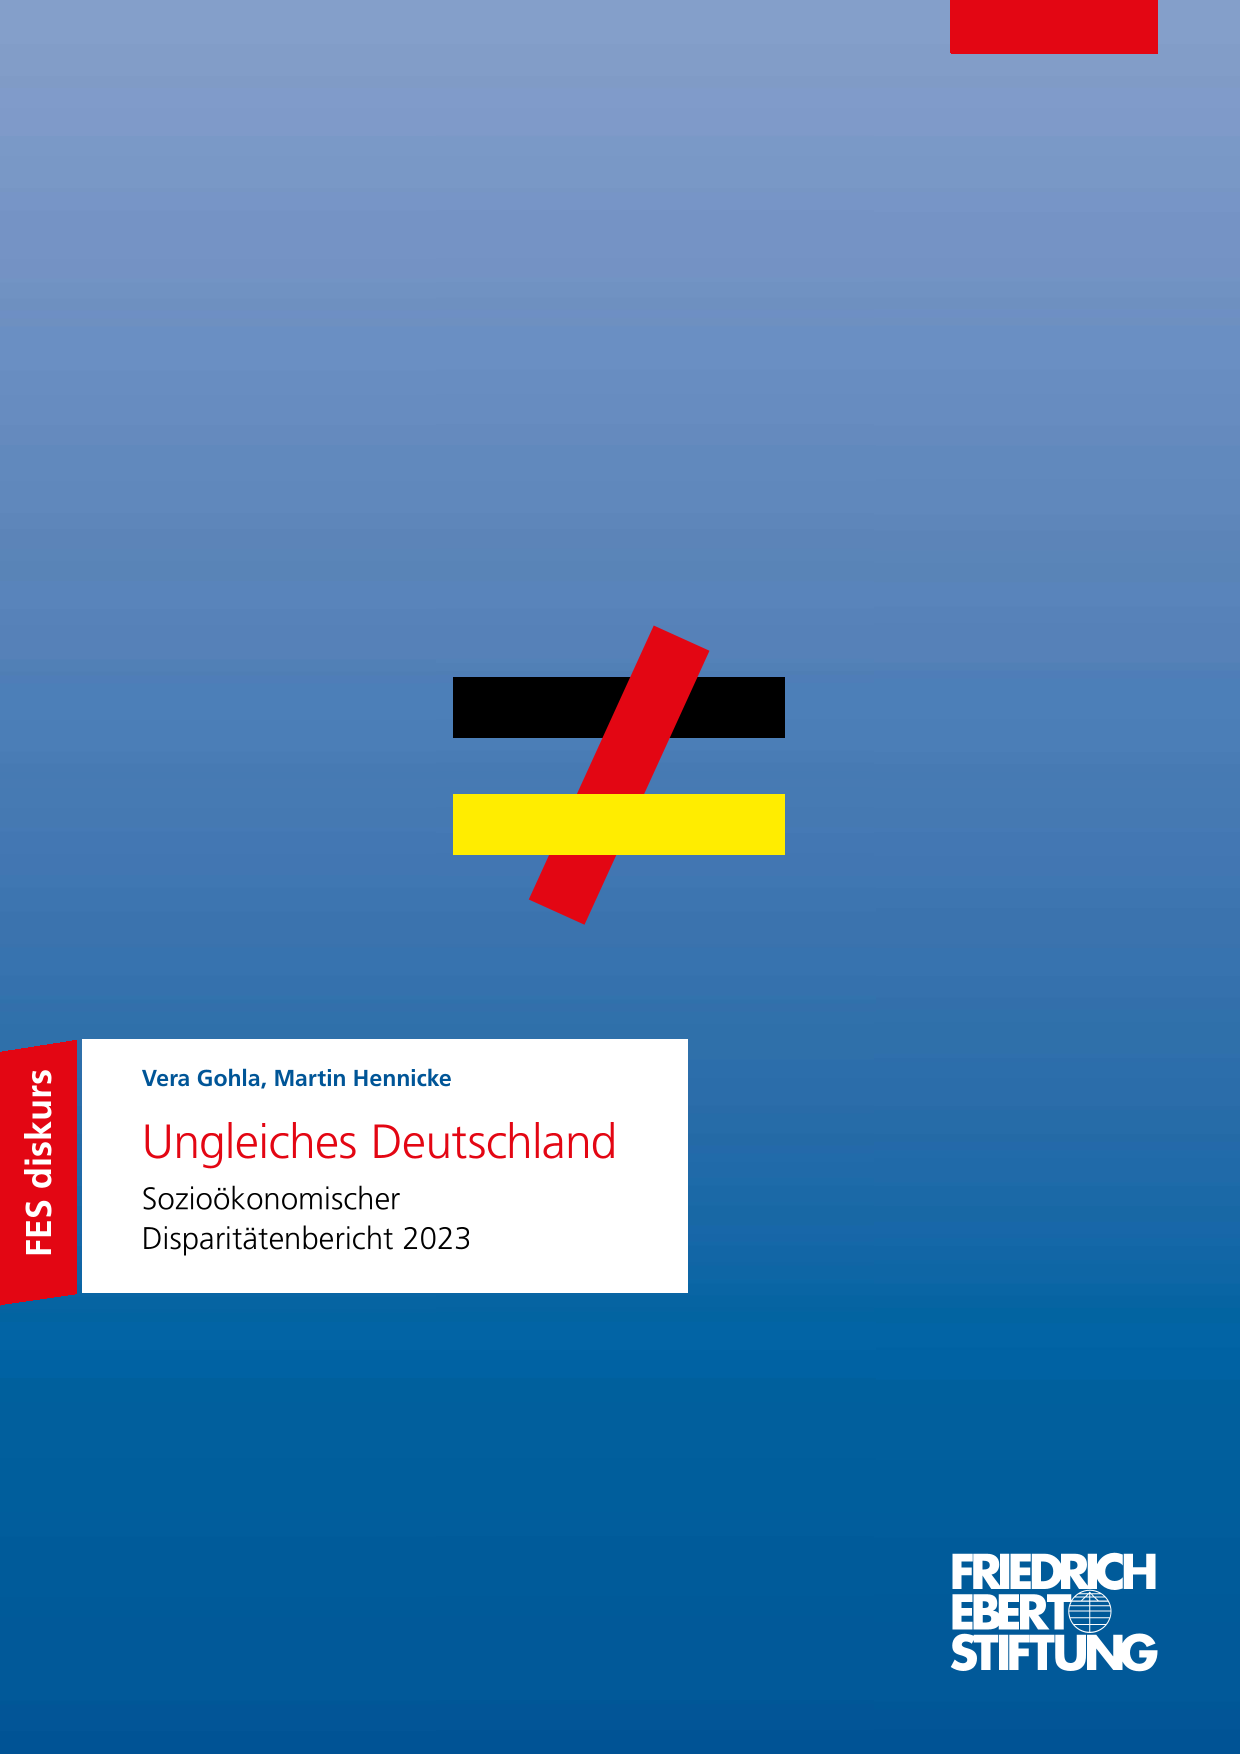 Coverbild der Studie "Ungleiches Deutschland - Sozioökonomischer Disparitätenbericht 2023"; blauer Hintergrund mit Farbverlauf, darauf ein Ungleichheitszeichen in den Farben der Deutschlandflagge. Darauf der Titel der Studie.